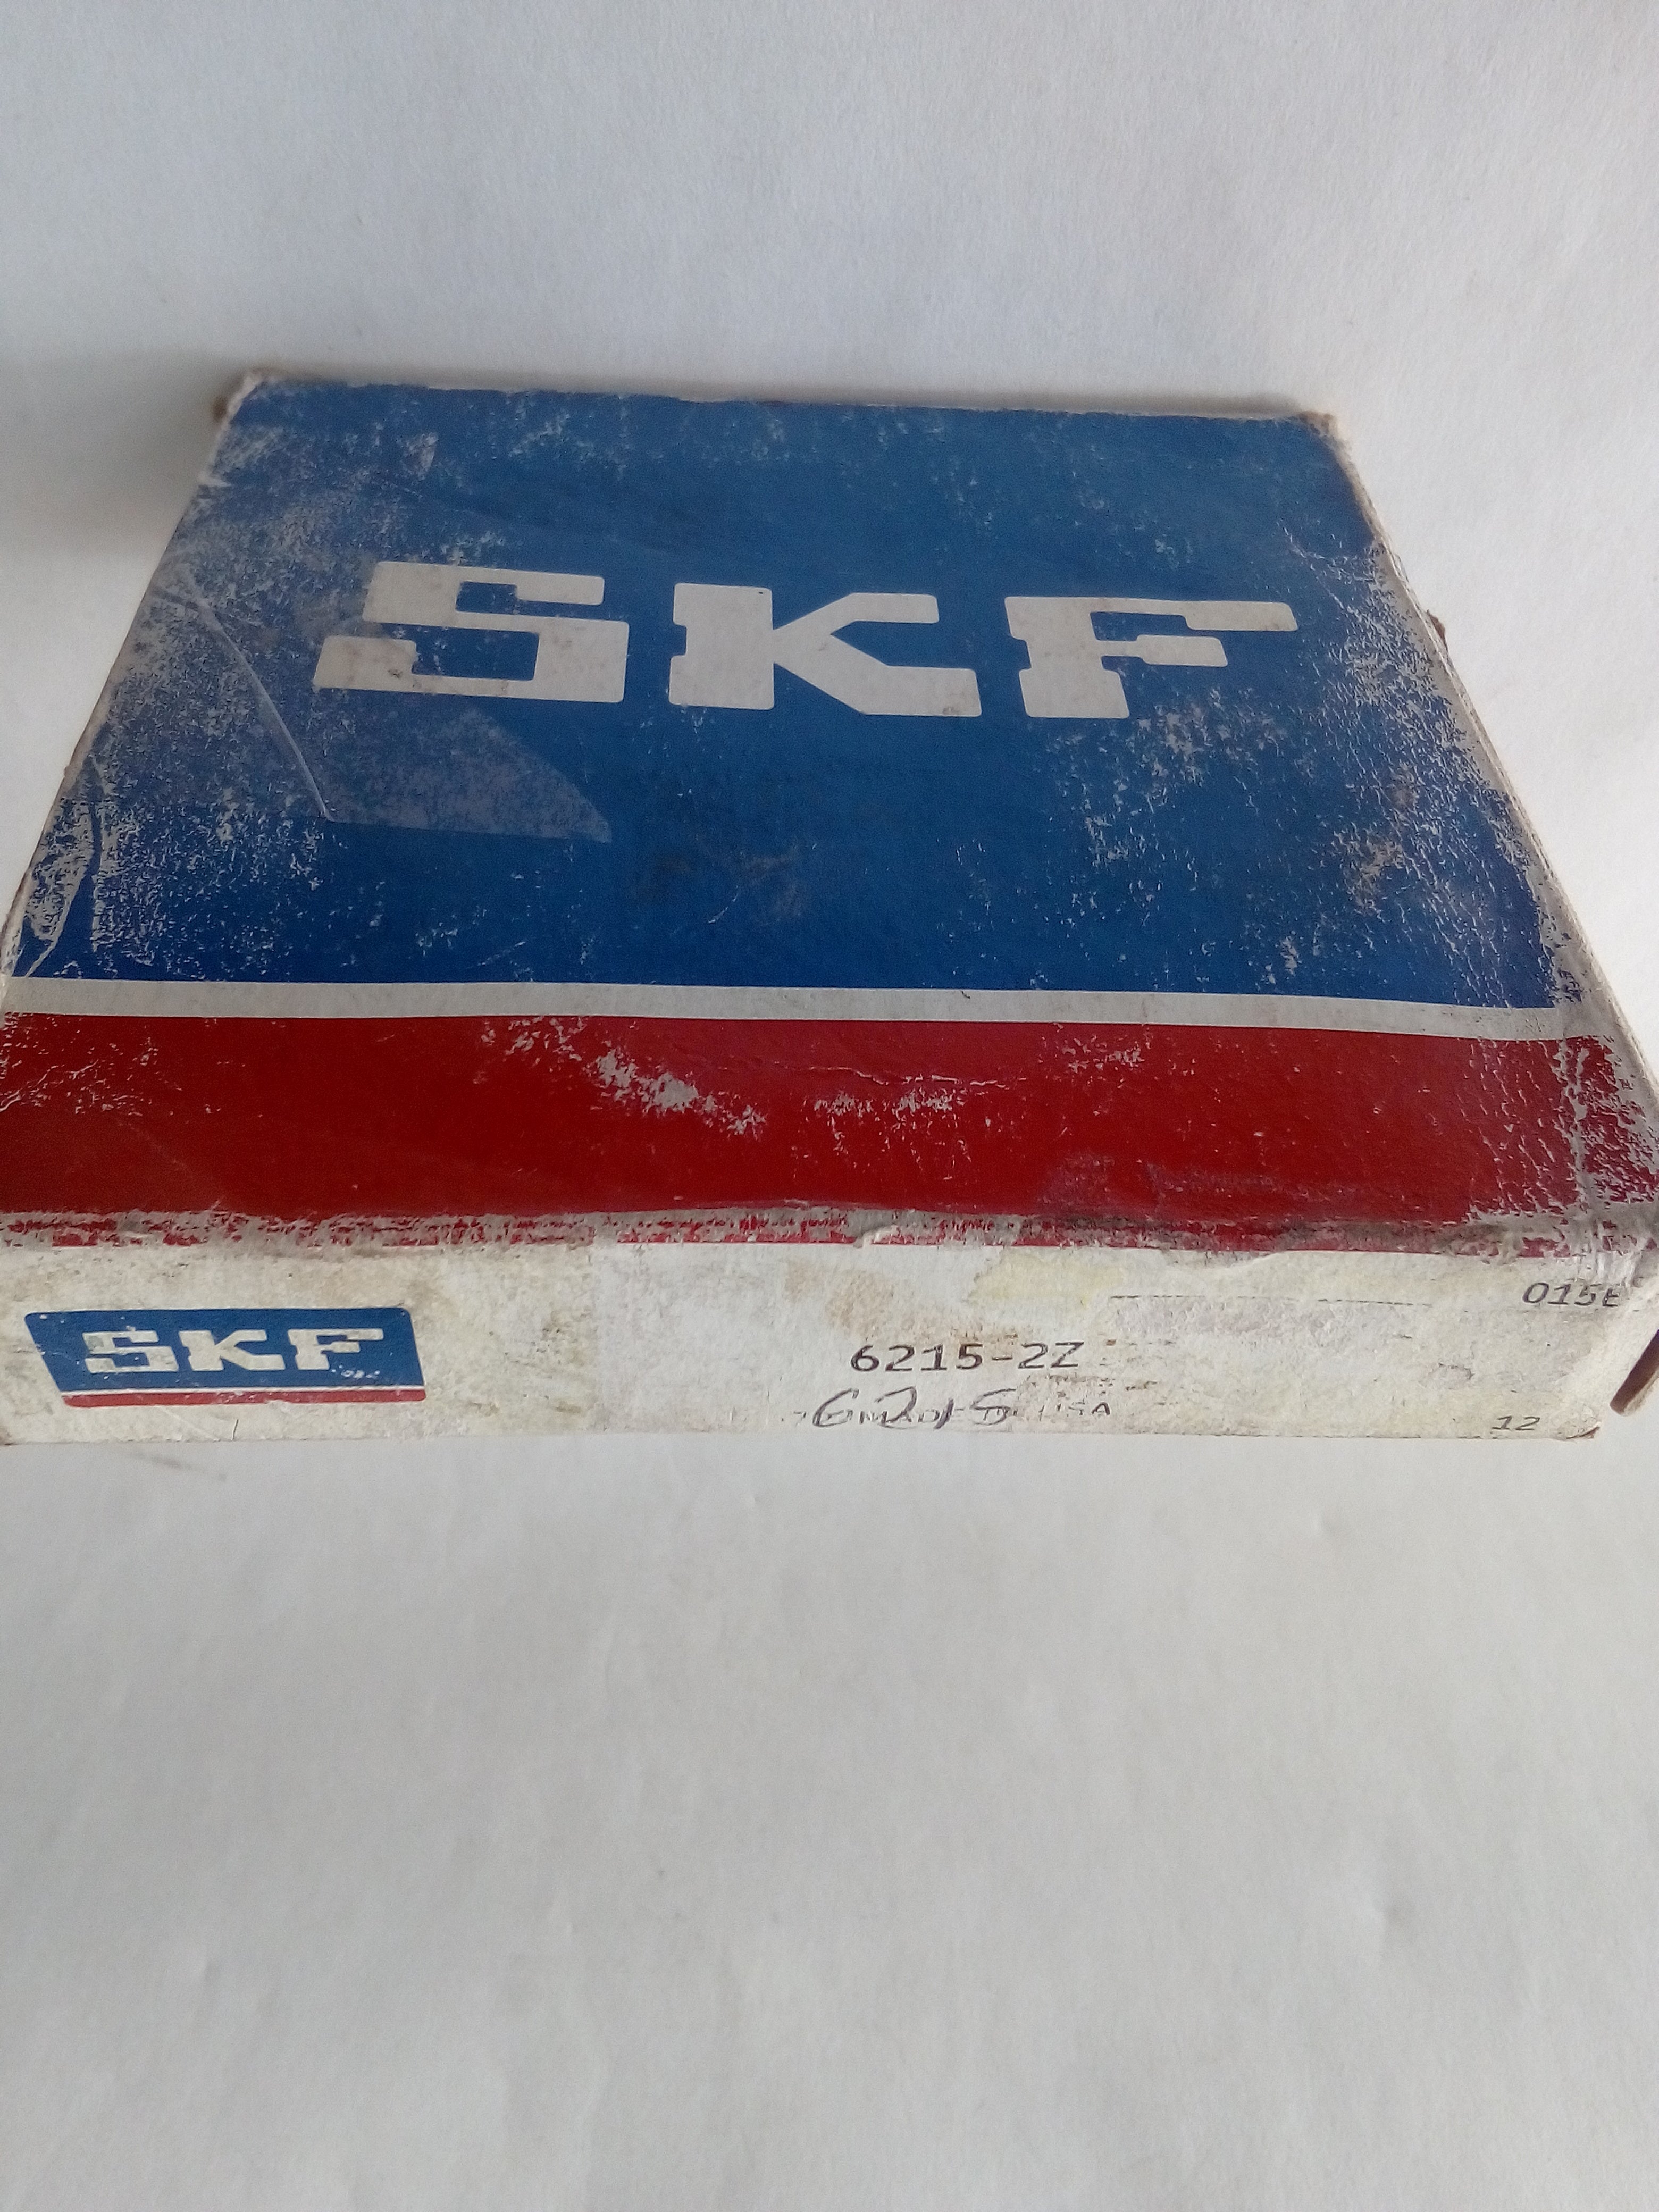 Rodamiento SKF 6215-2Z